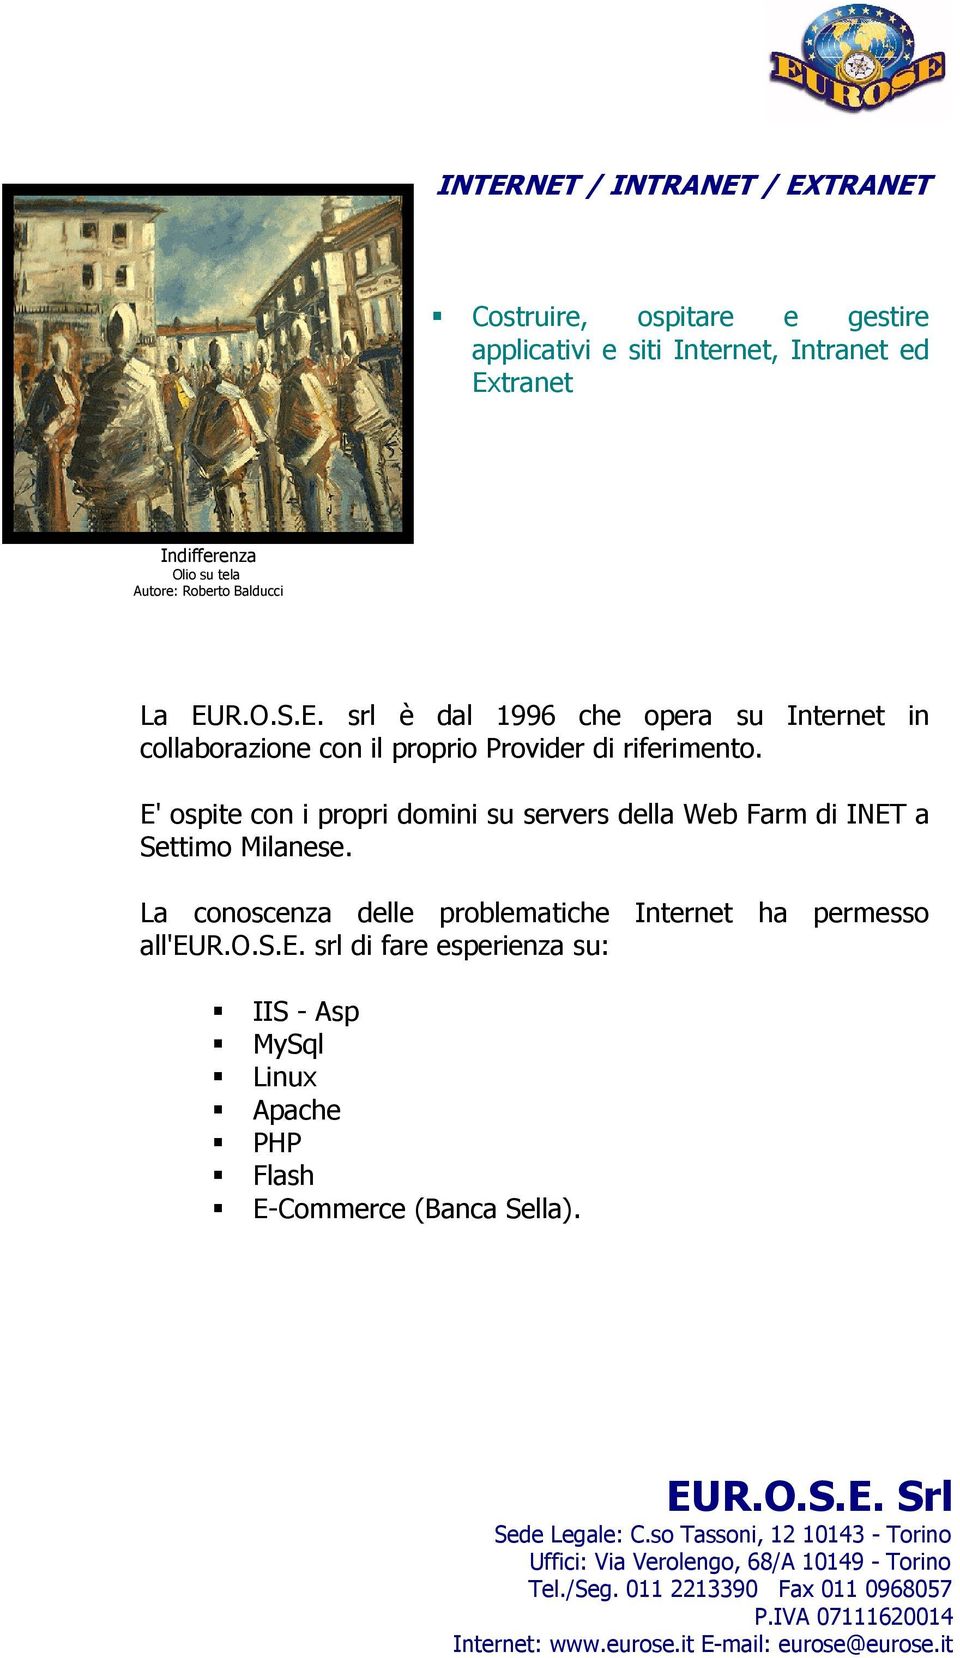 E' ospite con i propri domini su servers della Web Farm di INET a Settimo Milanese.